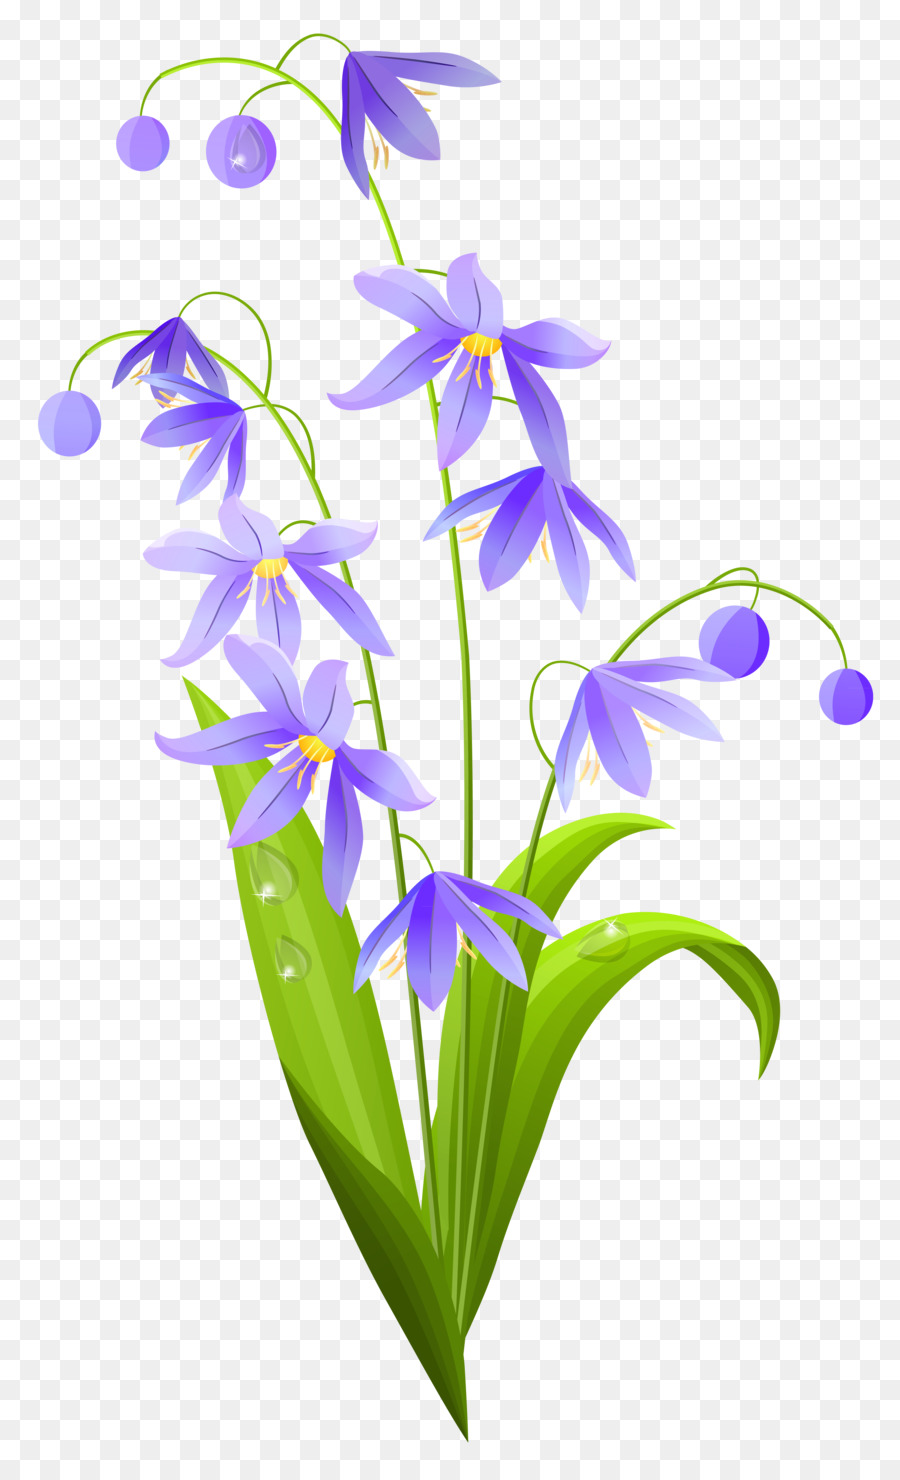 Flower Spring Clip art - spring png download - 4826*7855 - Free Transparent Flower png Download.